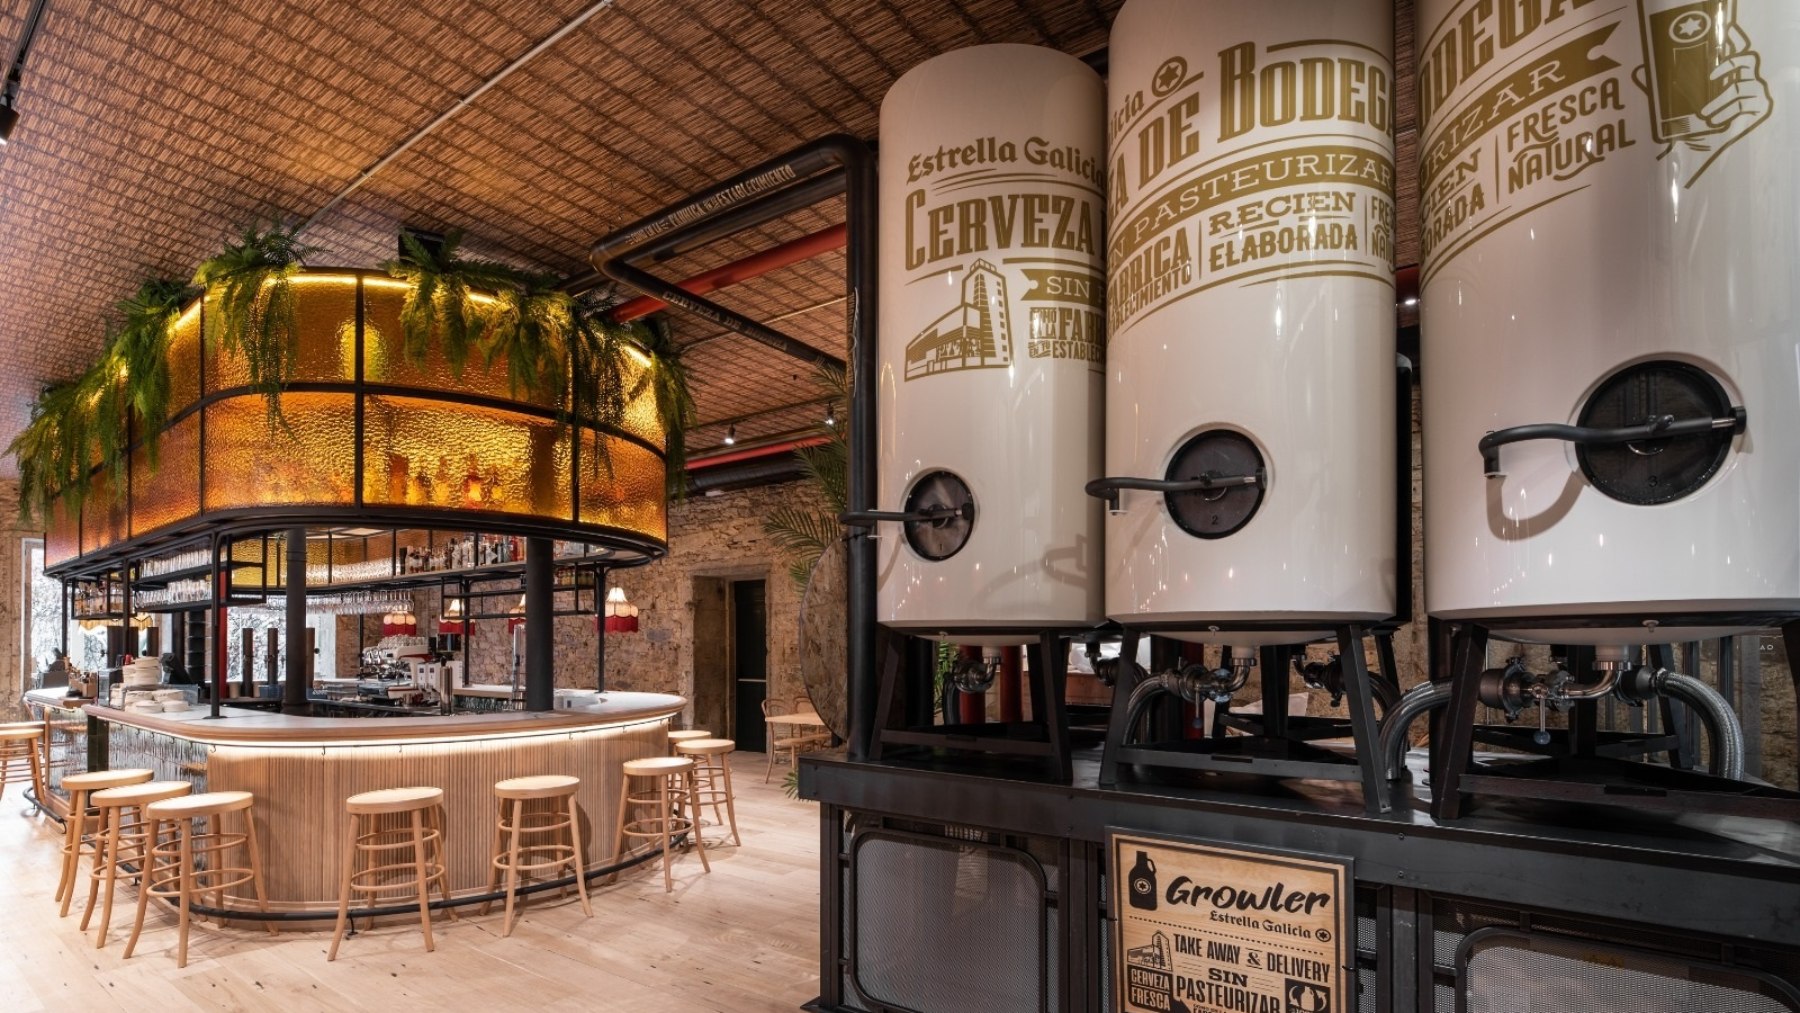 La hostelería se apunta a la sostenibilidad de la mano del sello Cervecerías Circulares